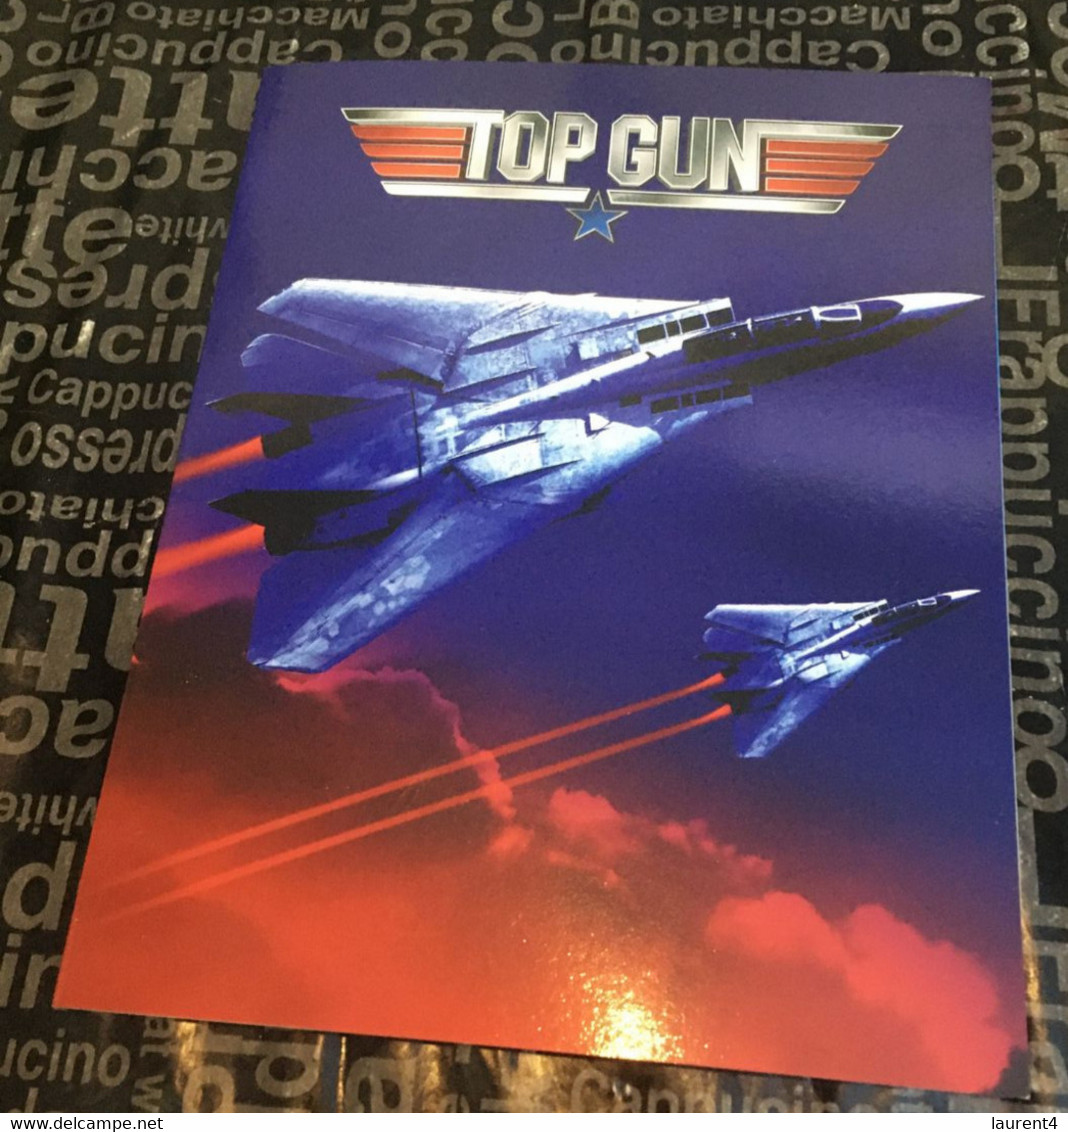 24-09-2021 - Australia - TOP GUN Movie 35th Anni. Souvenir Folder - With 1 TOP GUN Cover - Cancelled 15 June 2021 - Presentation Packs